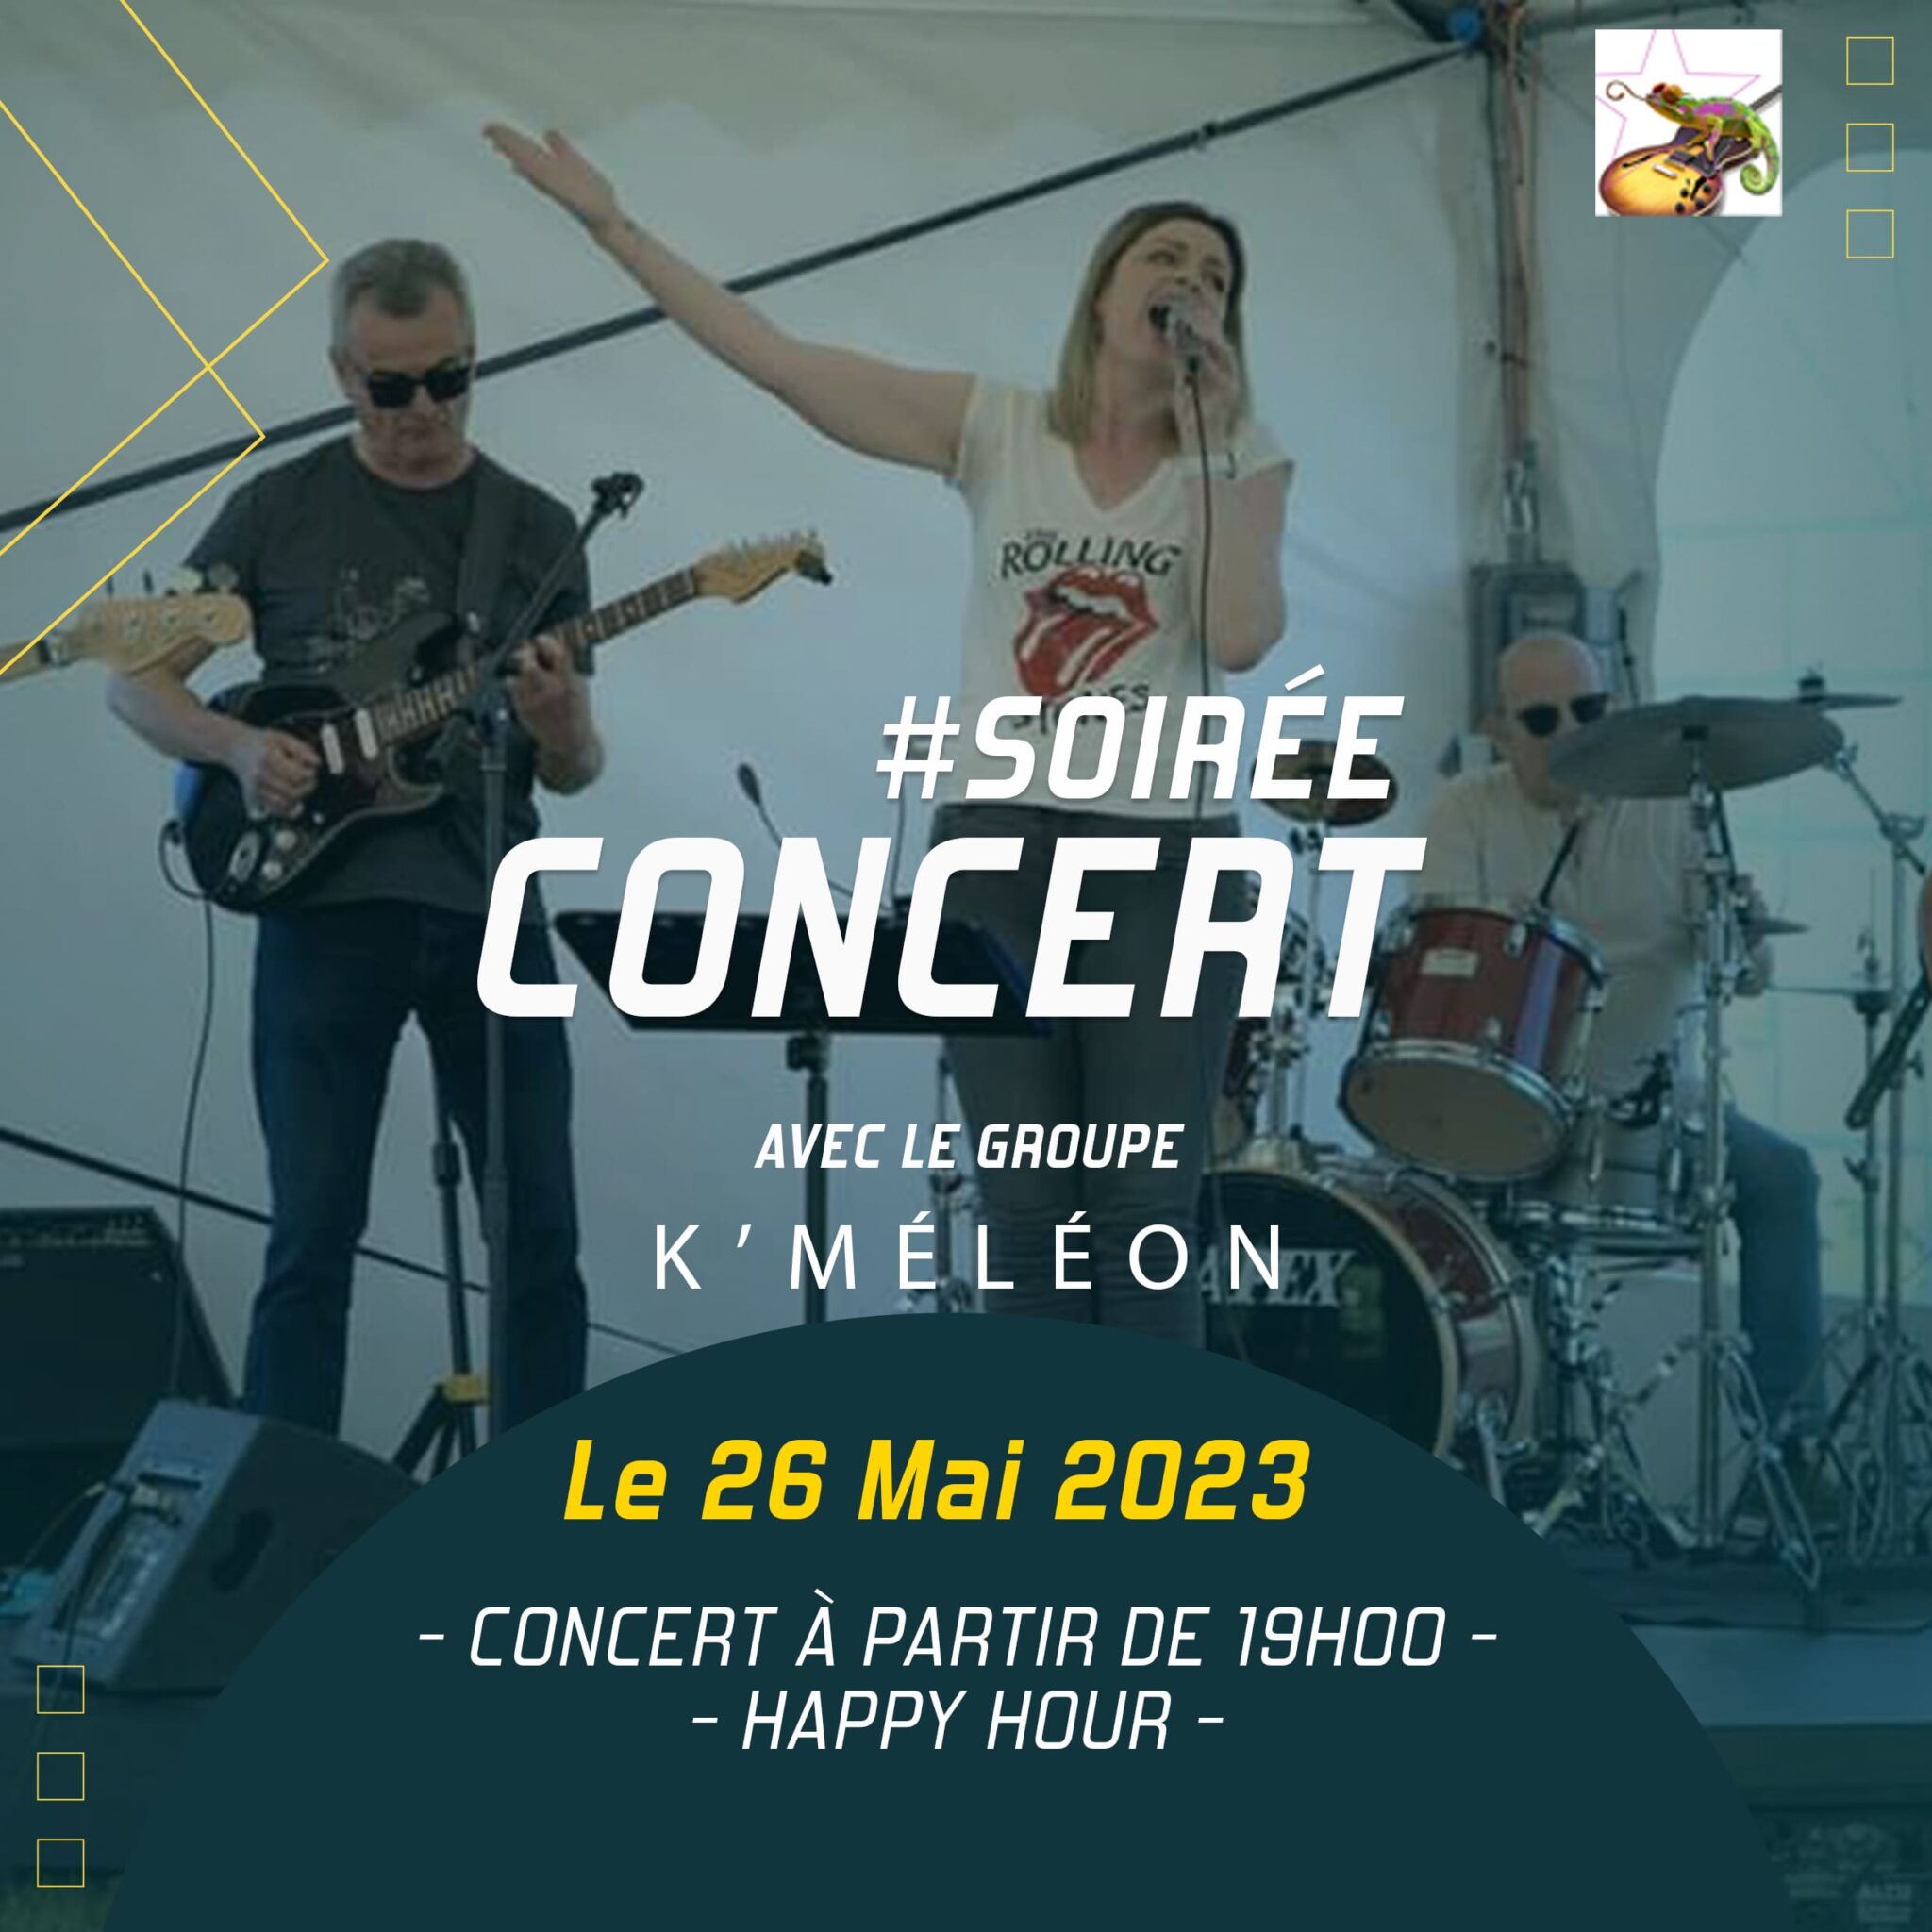 Soirée concert avec les K'Meleon vendredi 26 mai à Vertical'Ar Orléans